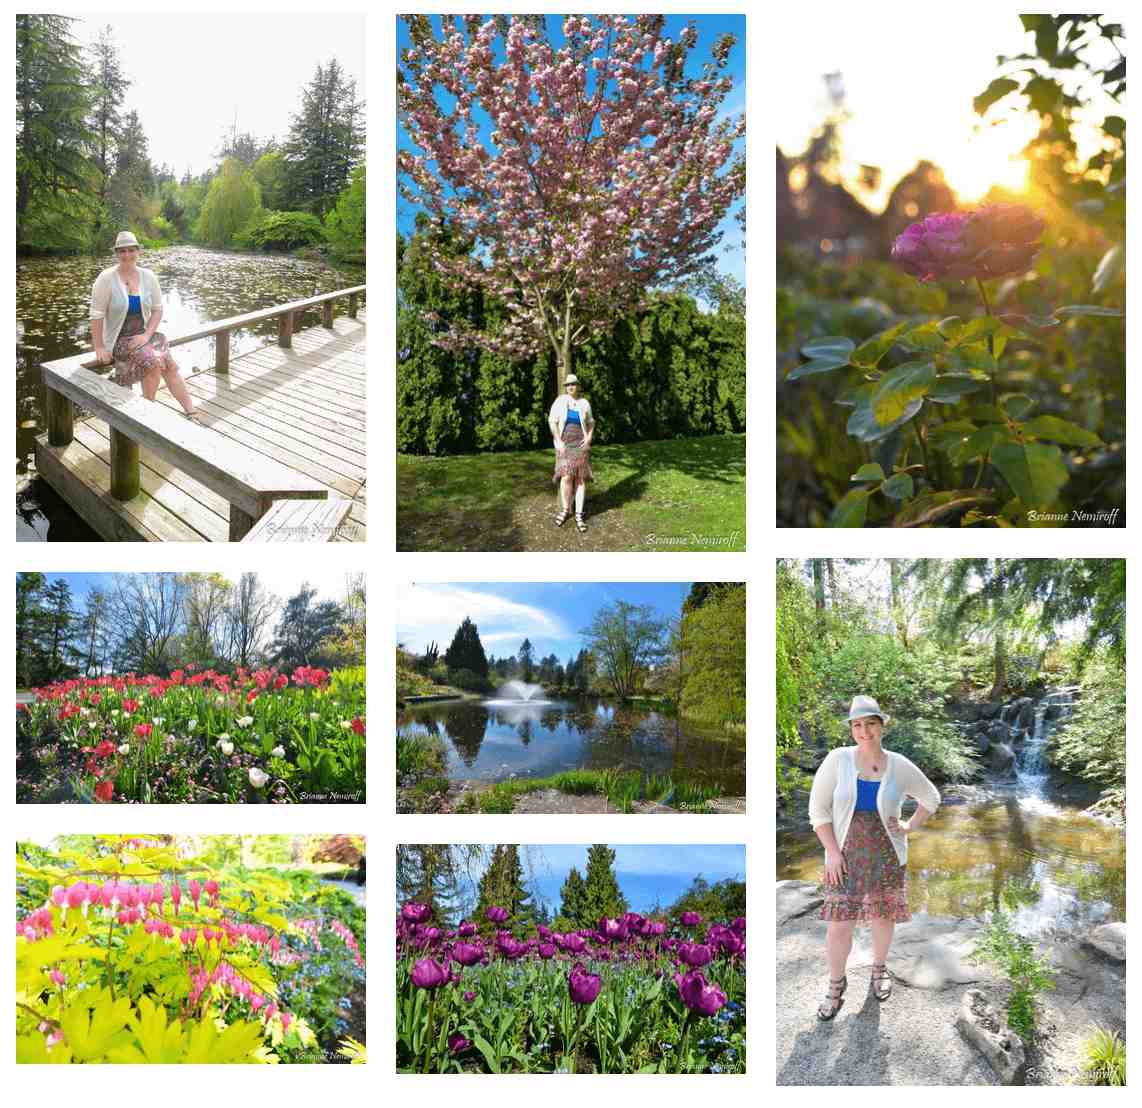 72 Hours in Vancouver, British Columbia - Queen Elizabeth Park